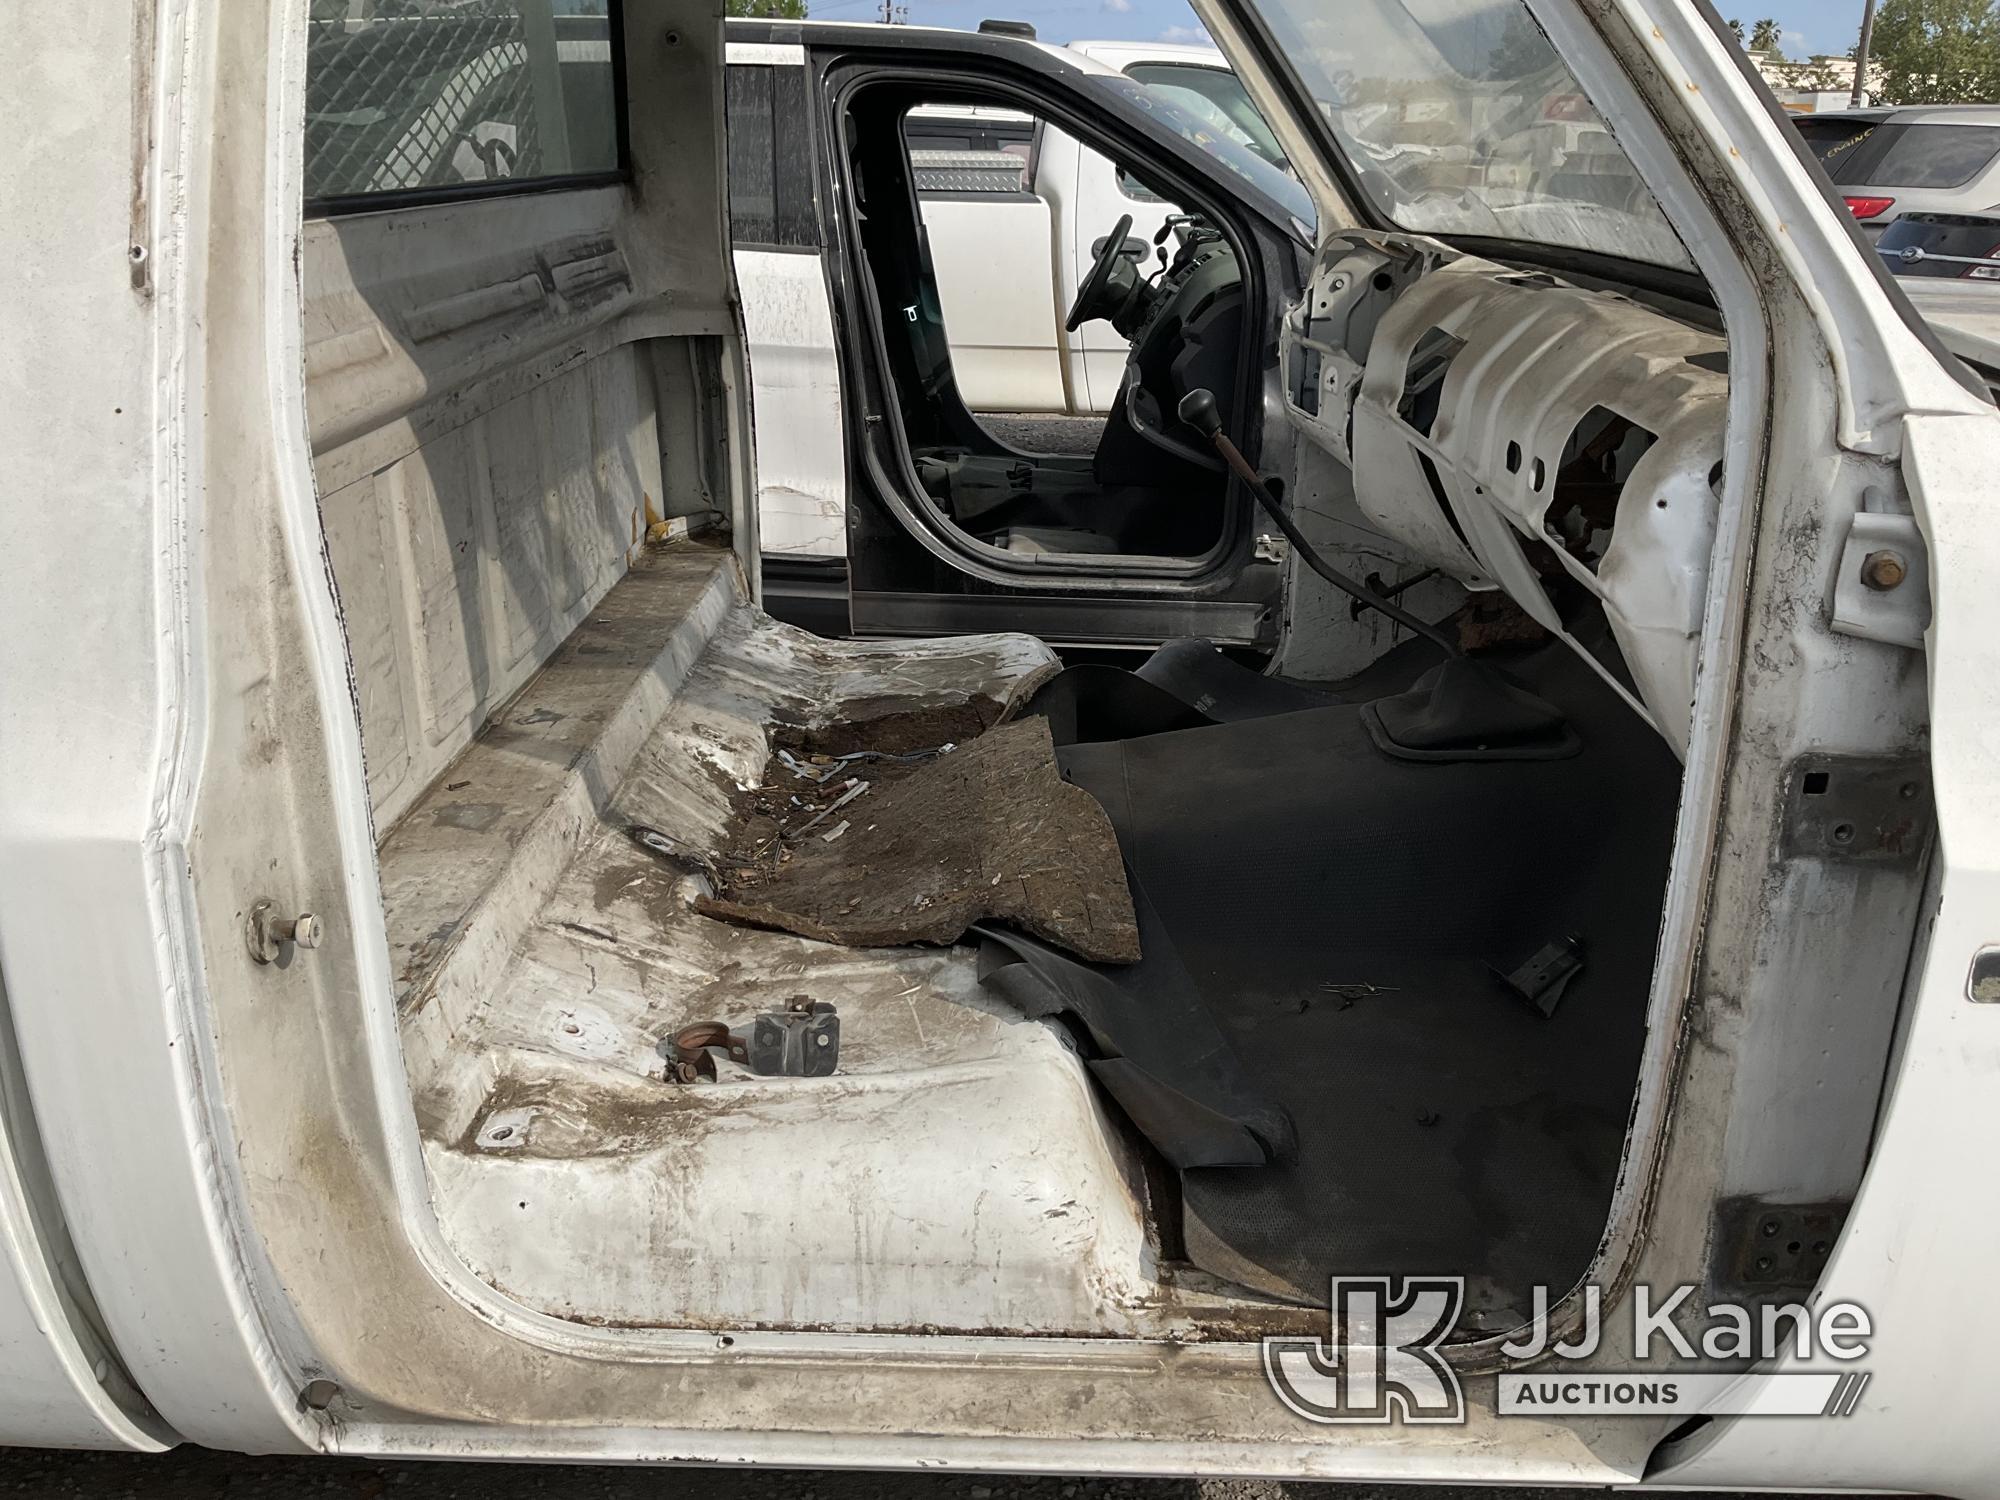 (Jurupa Valley, CA) 1987 Chevrolet R20 Regular Cab Pickup 2-DR Not Running, Interior Stripped Of Par